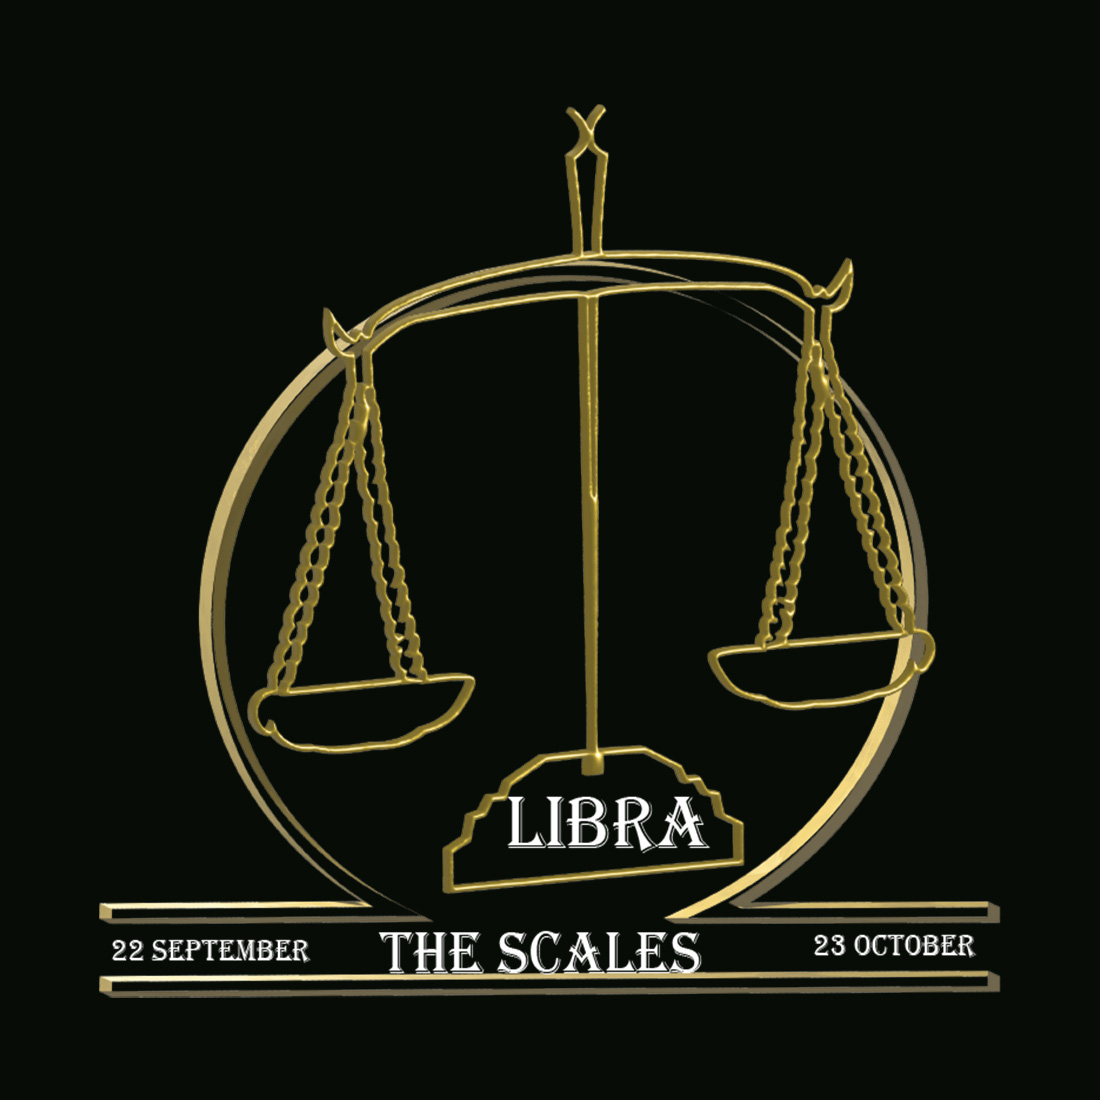 Zodiac Libra Symbol Design cover image.